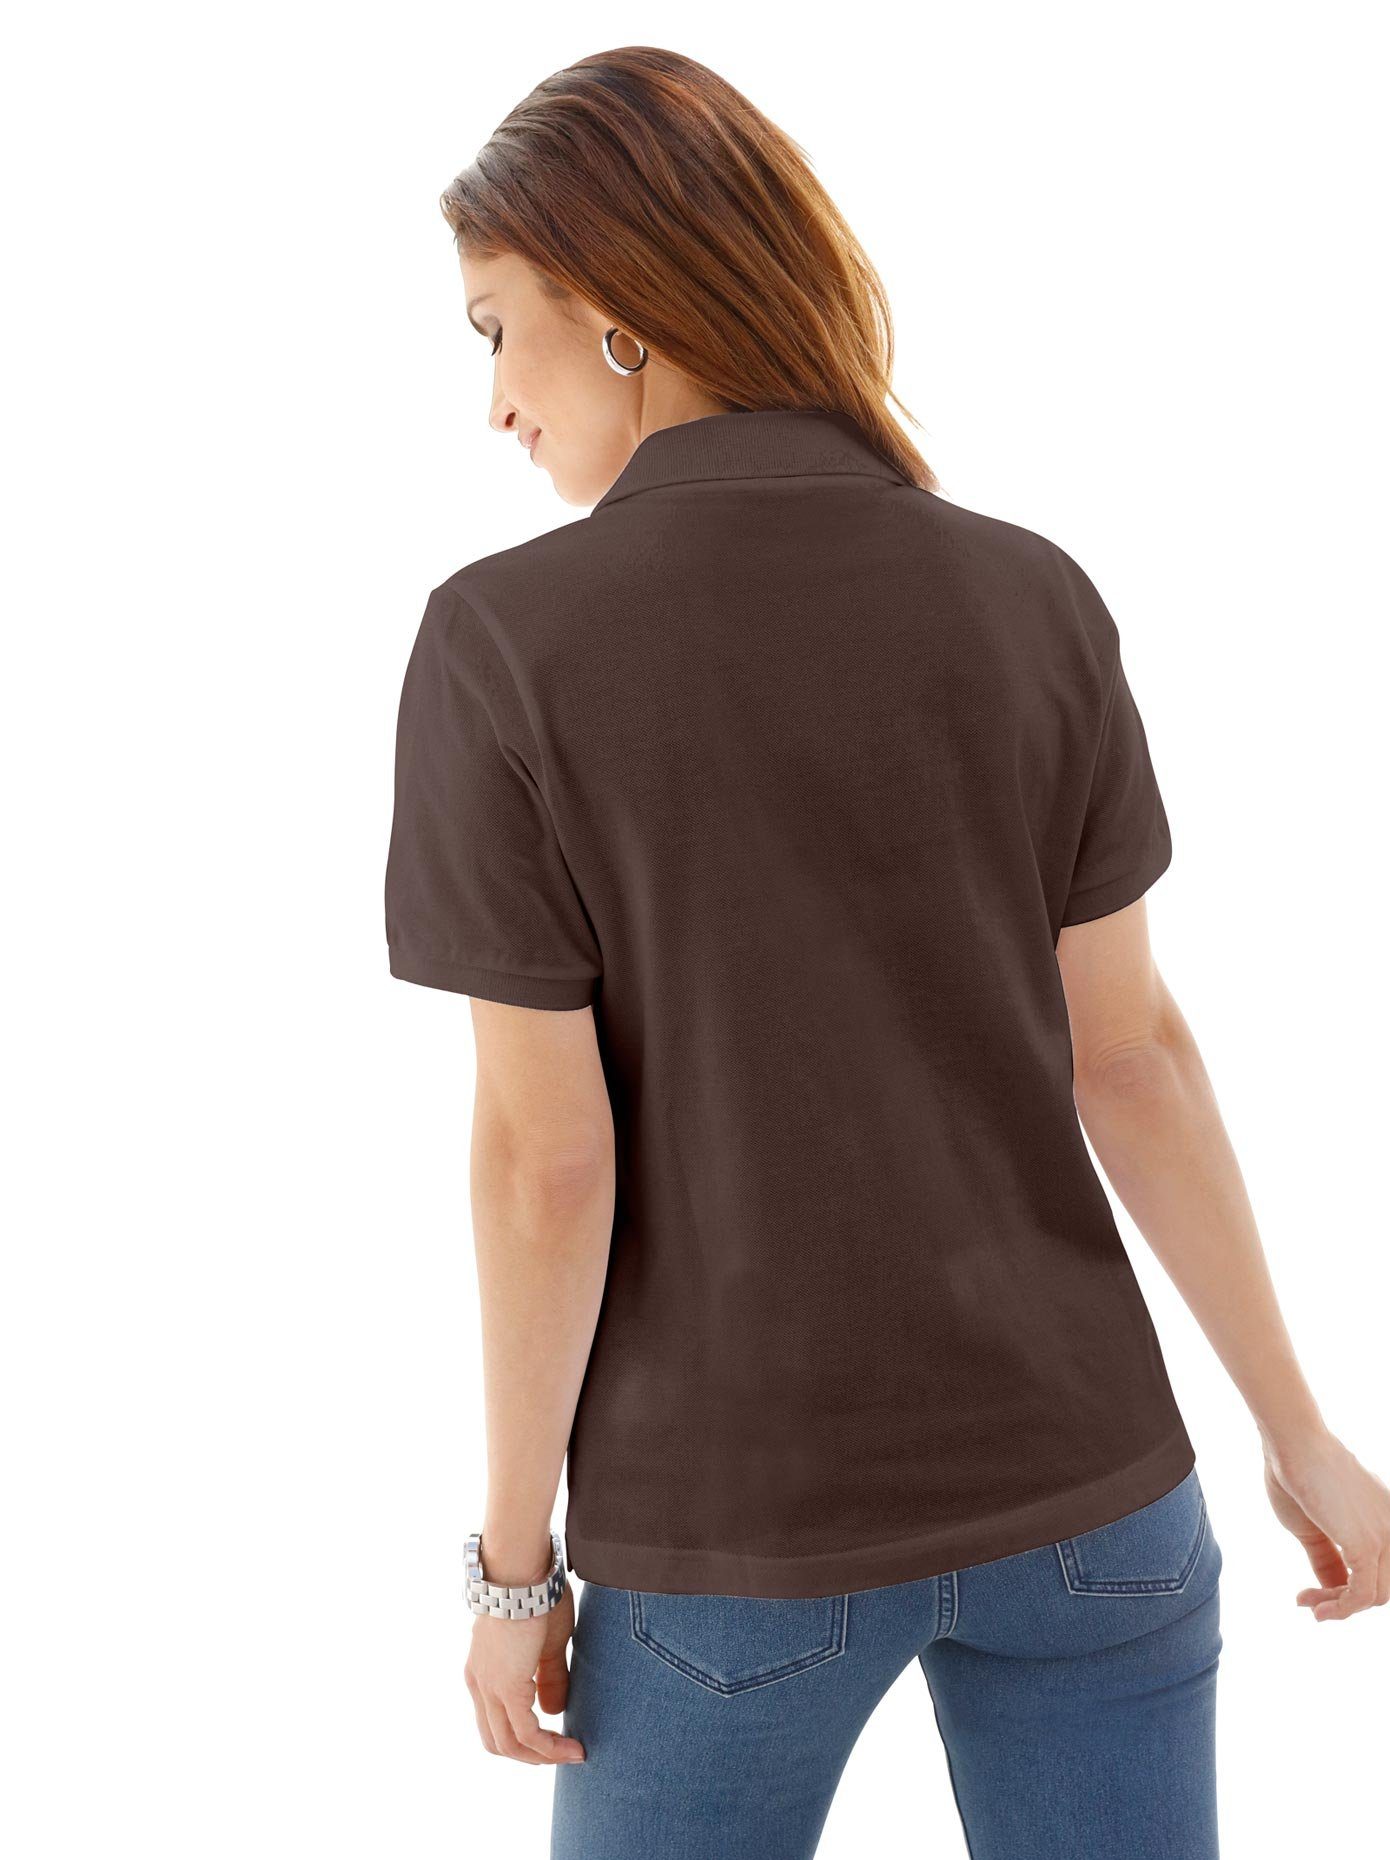 Bruine Shirts kopen | Bekijk de collectie | OTTO